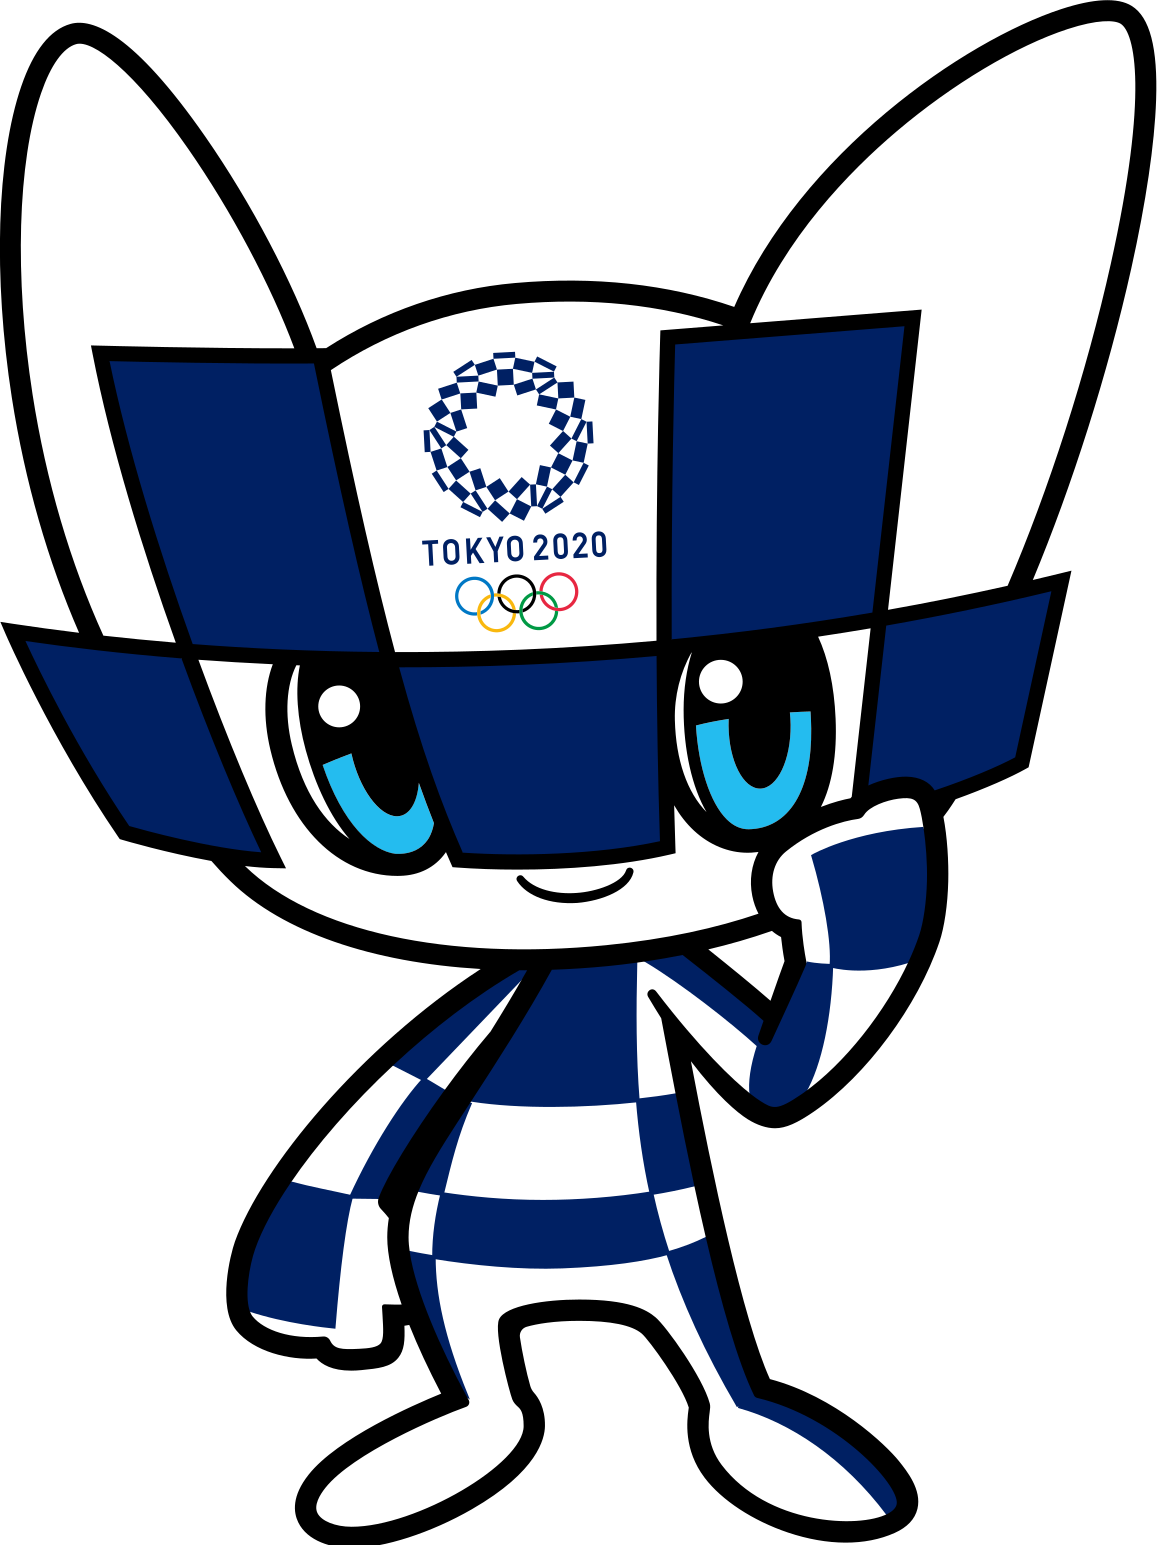 Tokyo 2020/Mascots | Olympics Wiki | FANDOM powered by Wikia